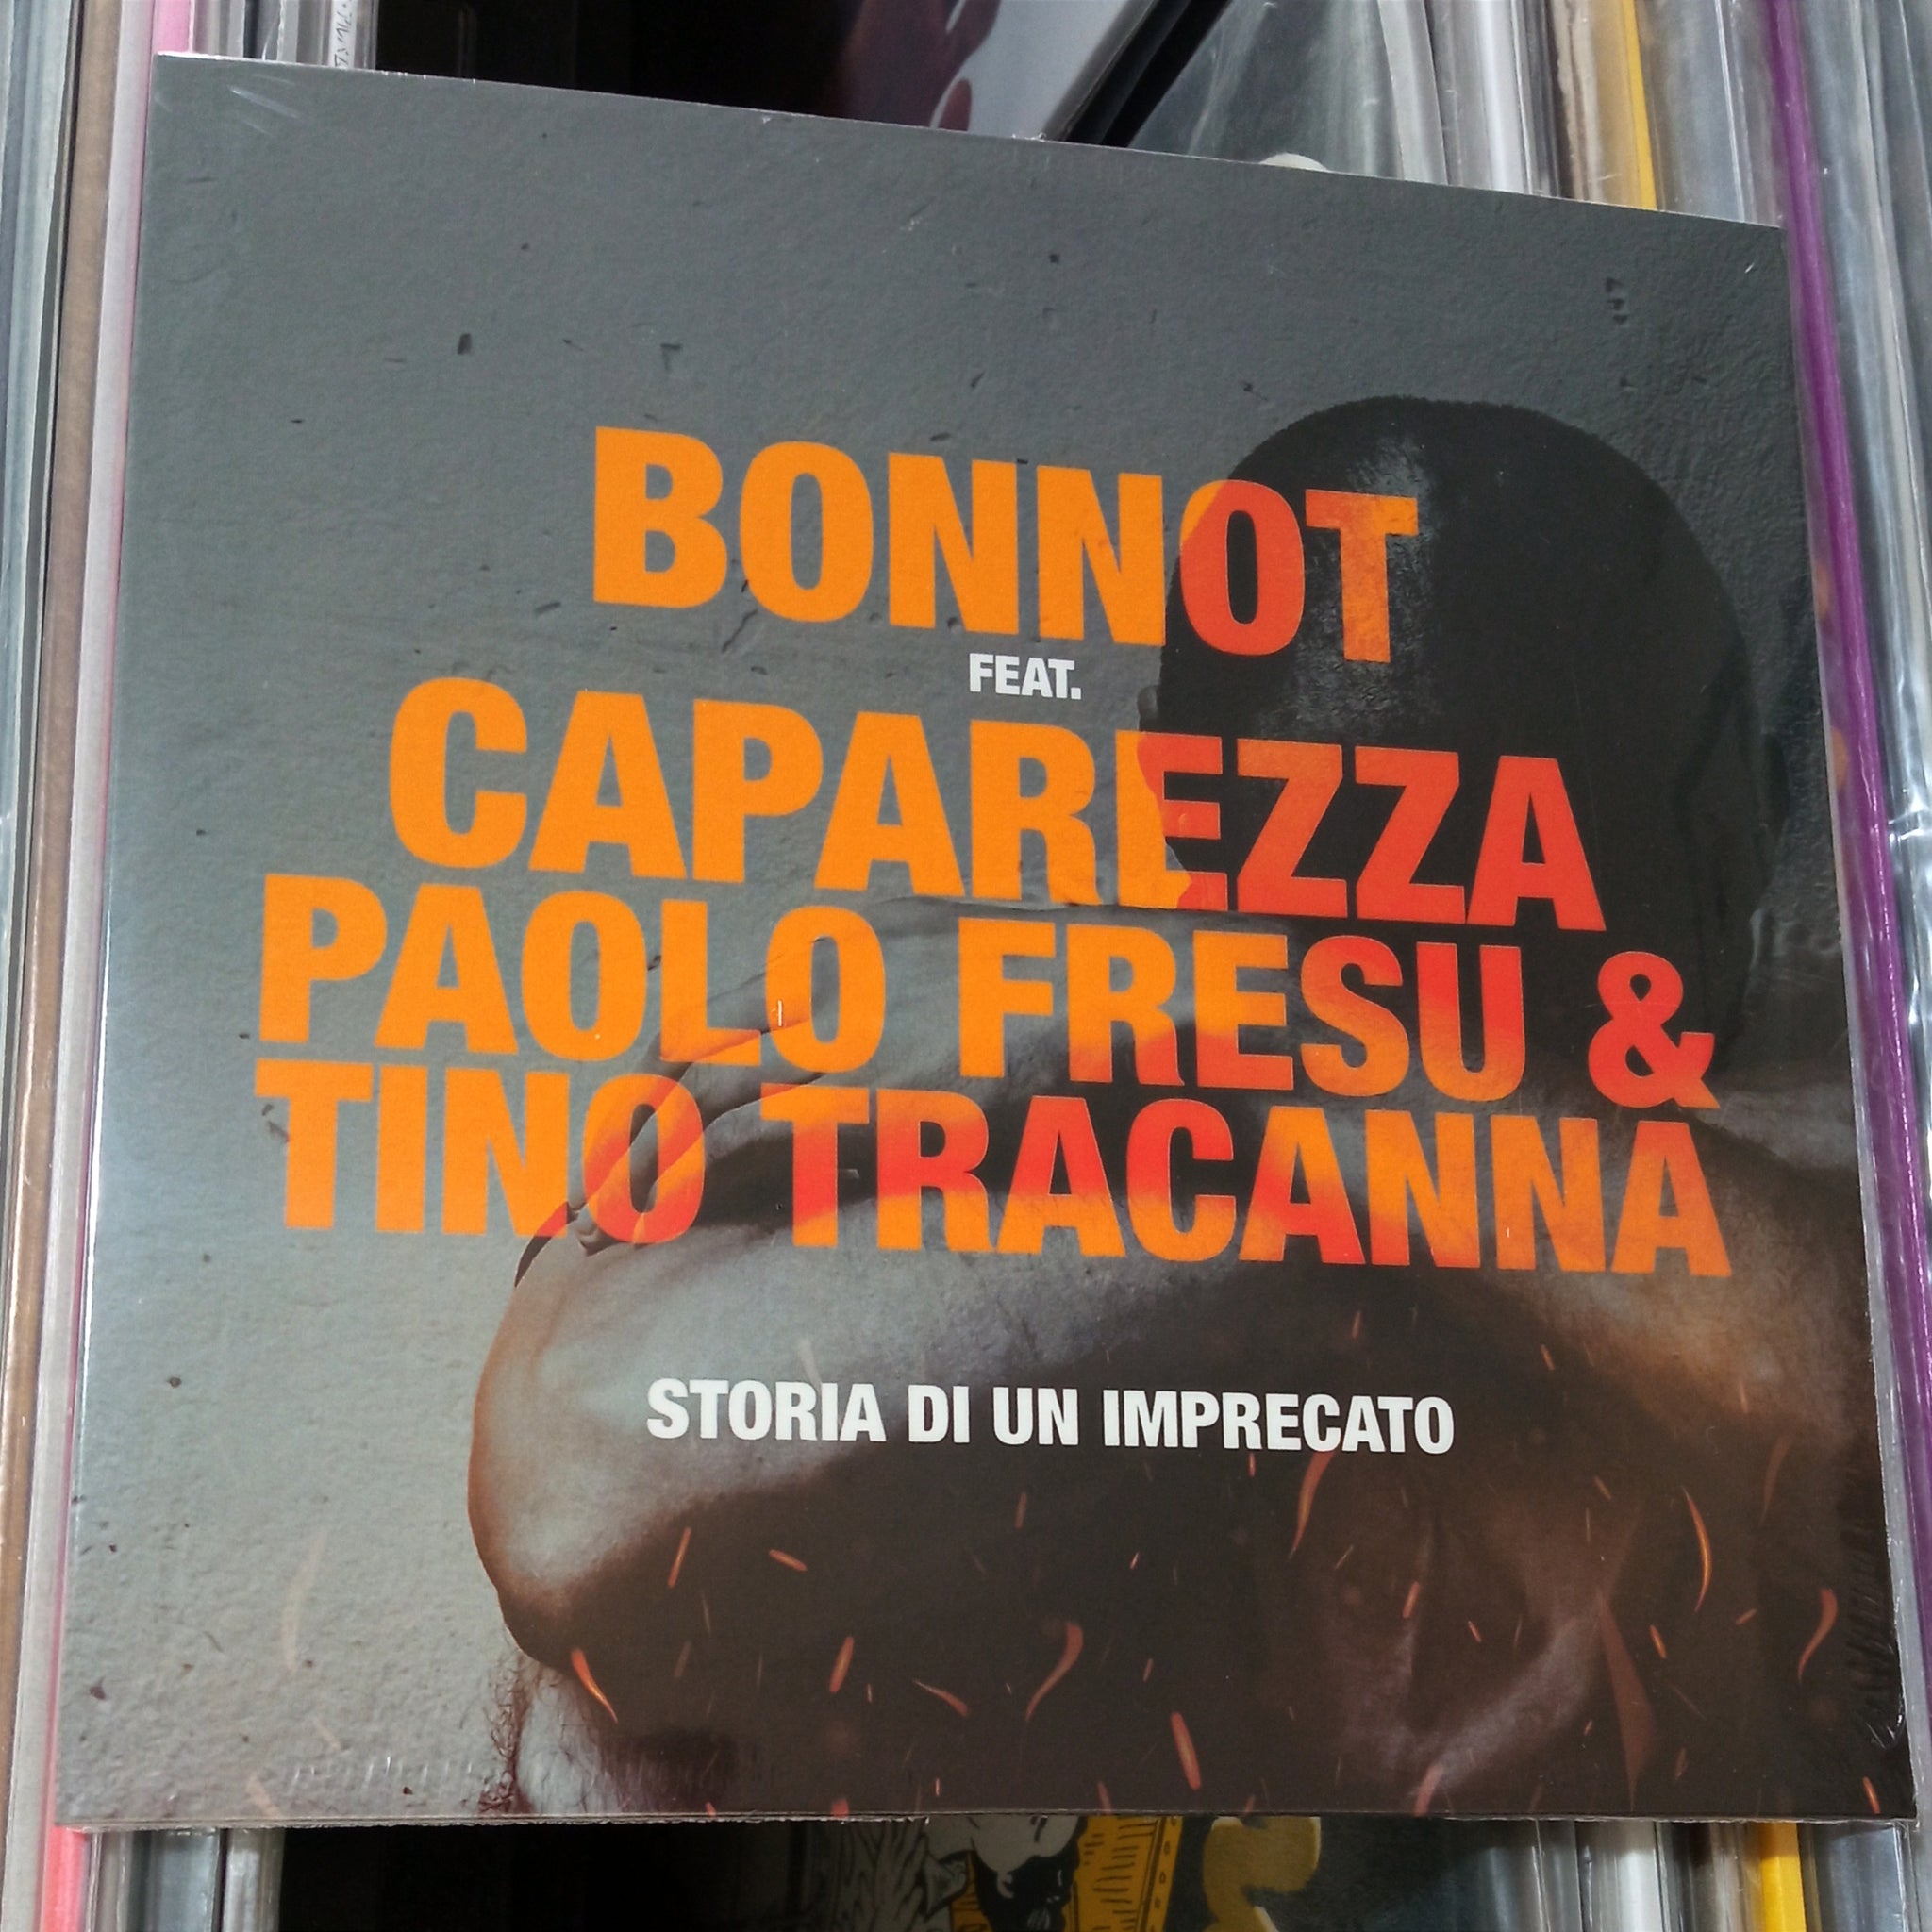 7" - BONNOT feat. CAPAREZZA, PAOLO FRESU & TINO TRACANNA - STORIA DI UN IMPRECATO